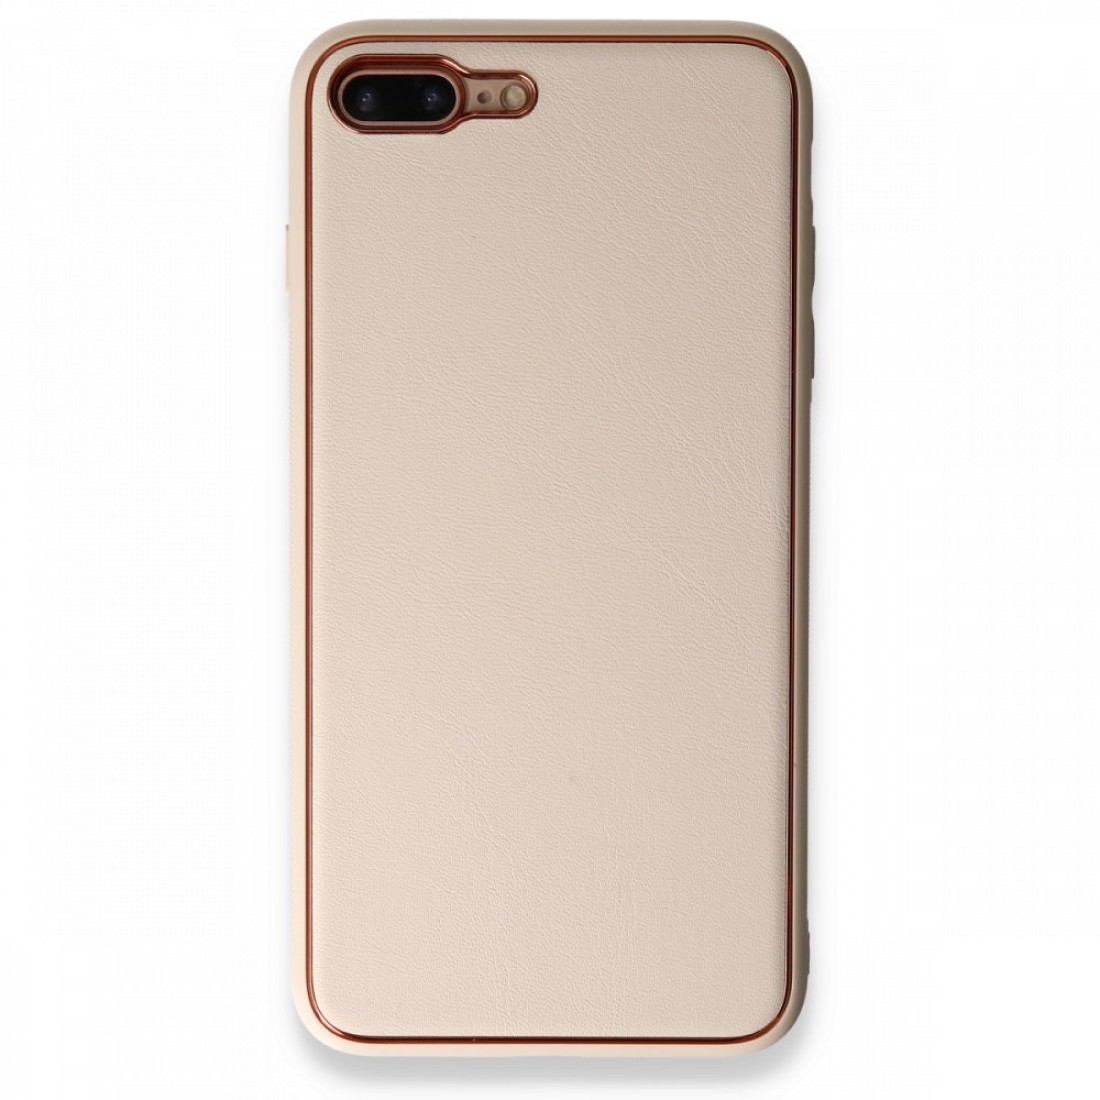 Apple iPhone 7 Plus Kılıf Coco Deri Silikon Kapak - Gold